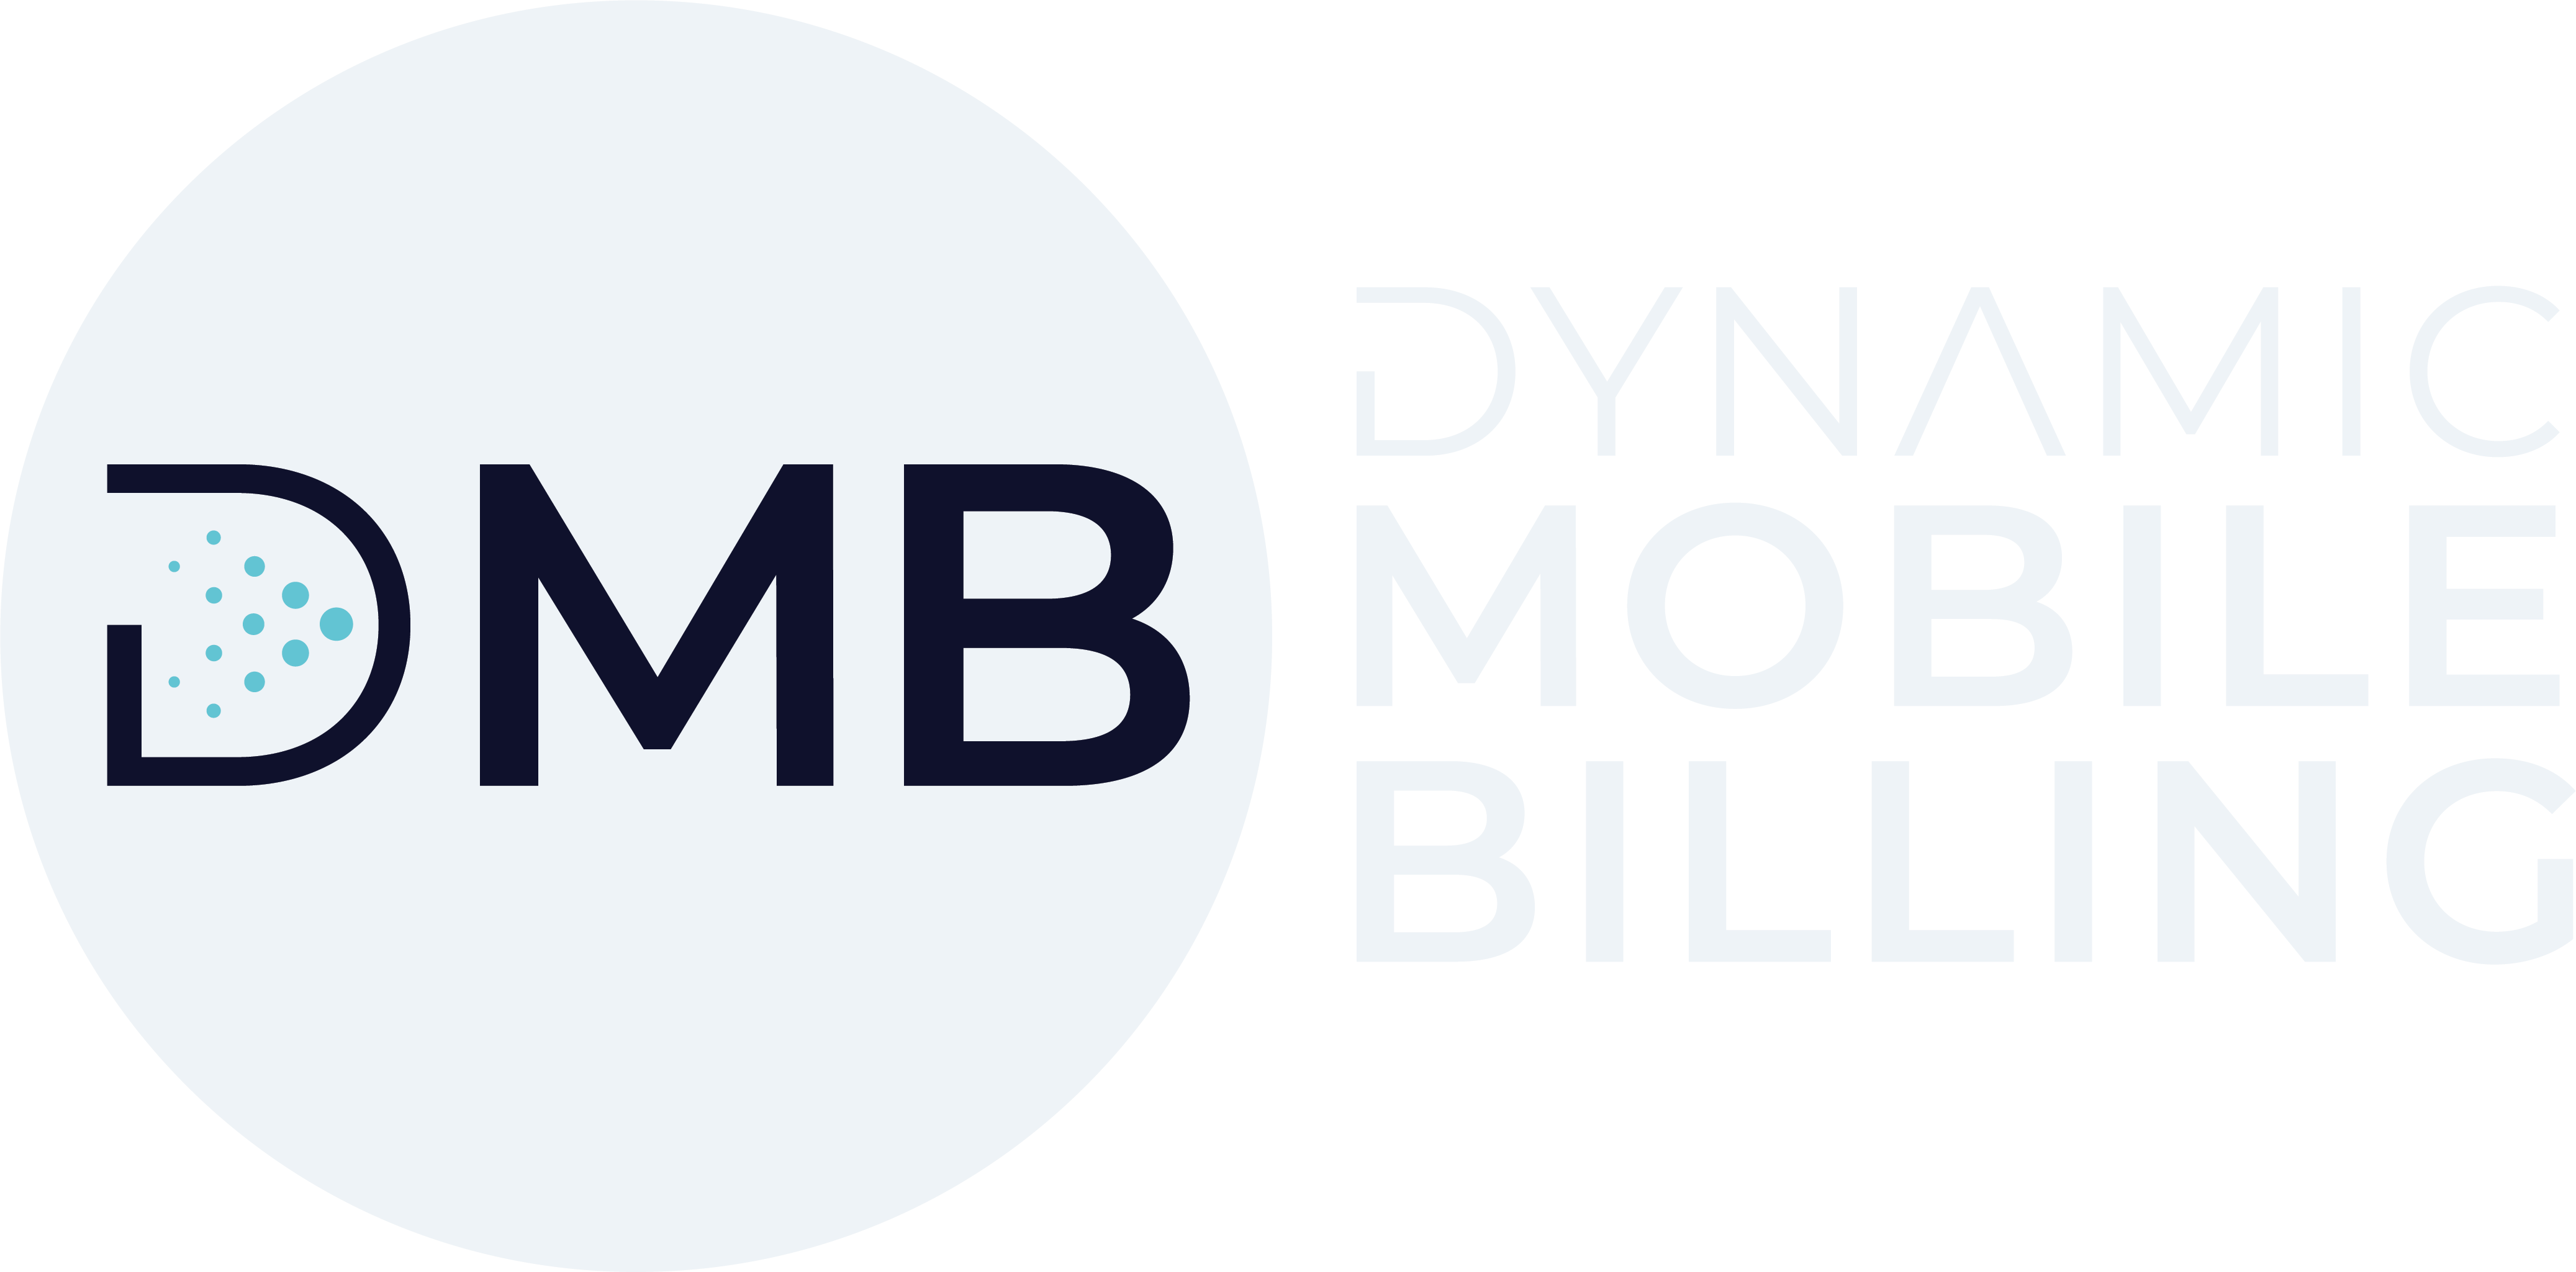 dmb logo 2023 in white